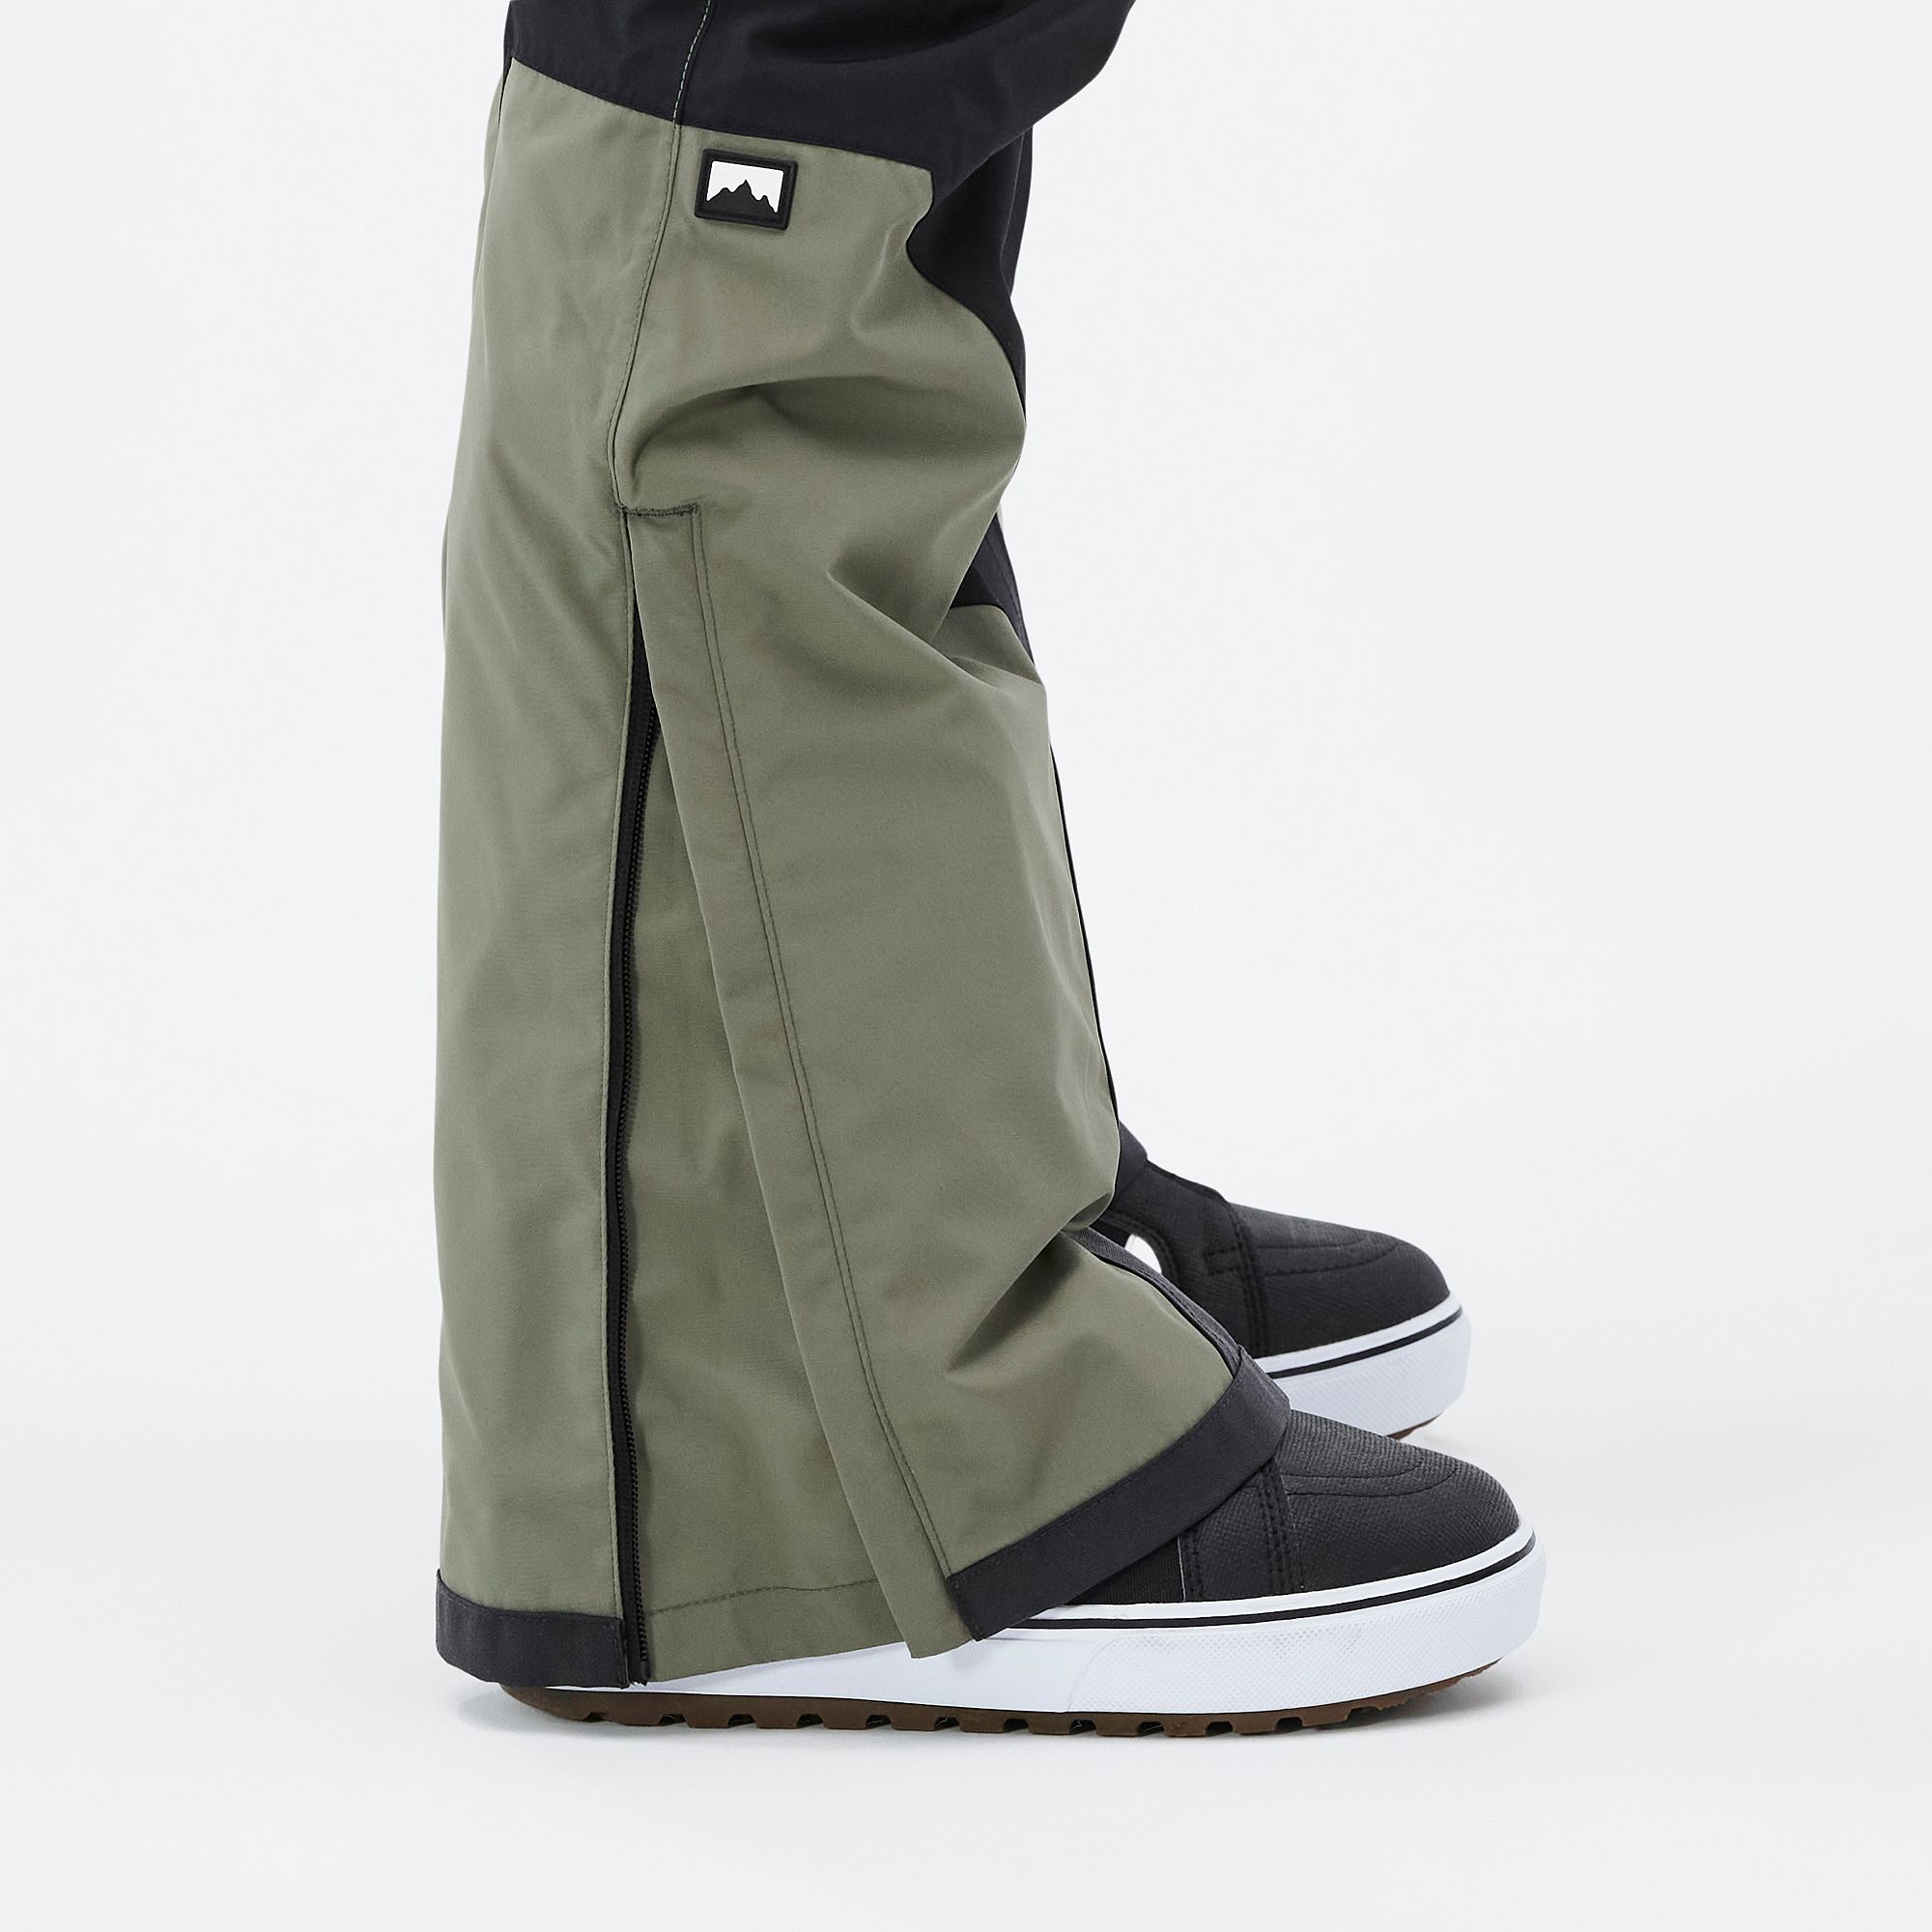 Amazon.com : YEEFINE Men's Waterproof Snow Pants Insulated Outdoor Ski Pants  Winter Warm Detachable Suspender Snowboard Bibs(Beige,XS) : Clothing, Shoes  & Jewelry